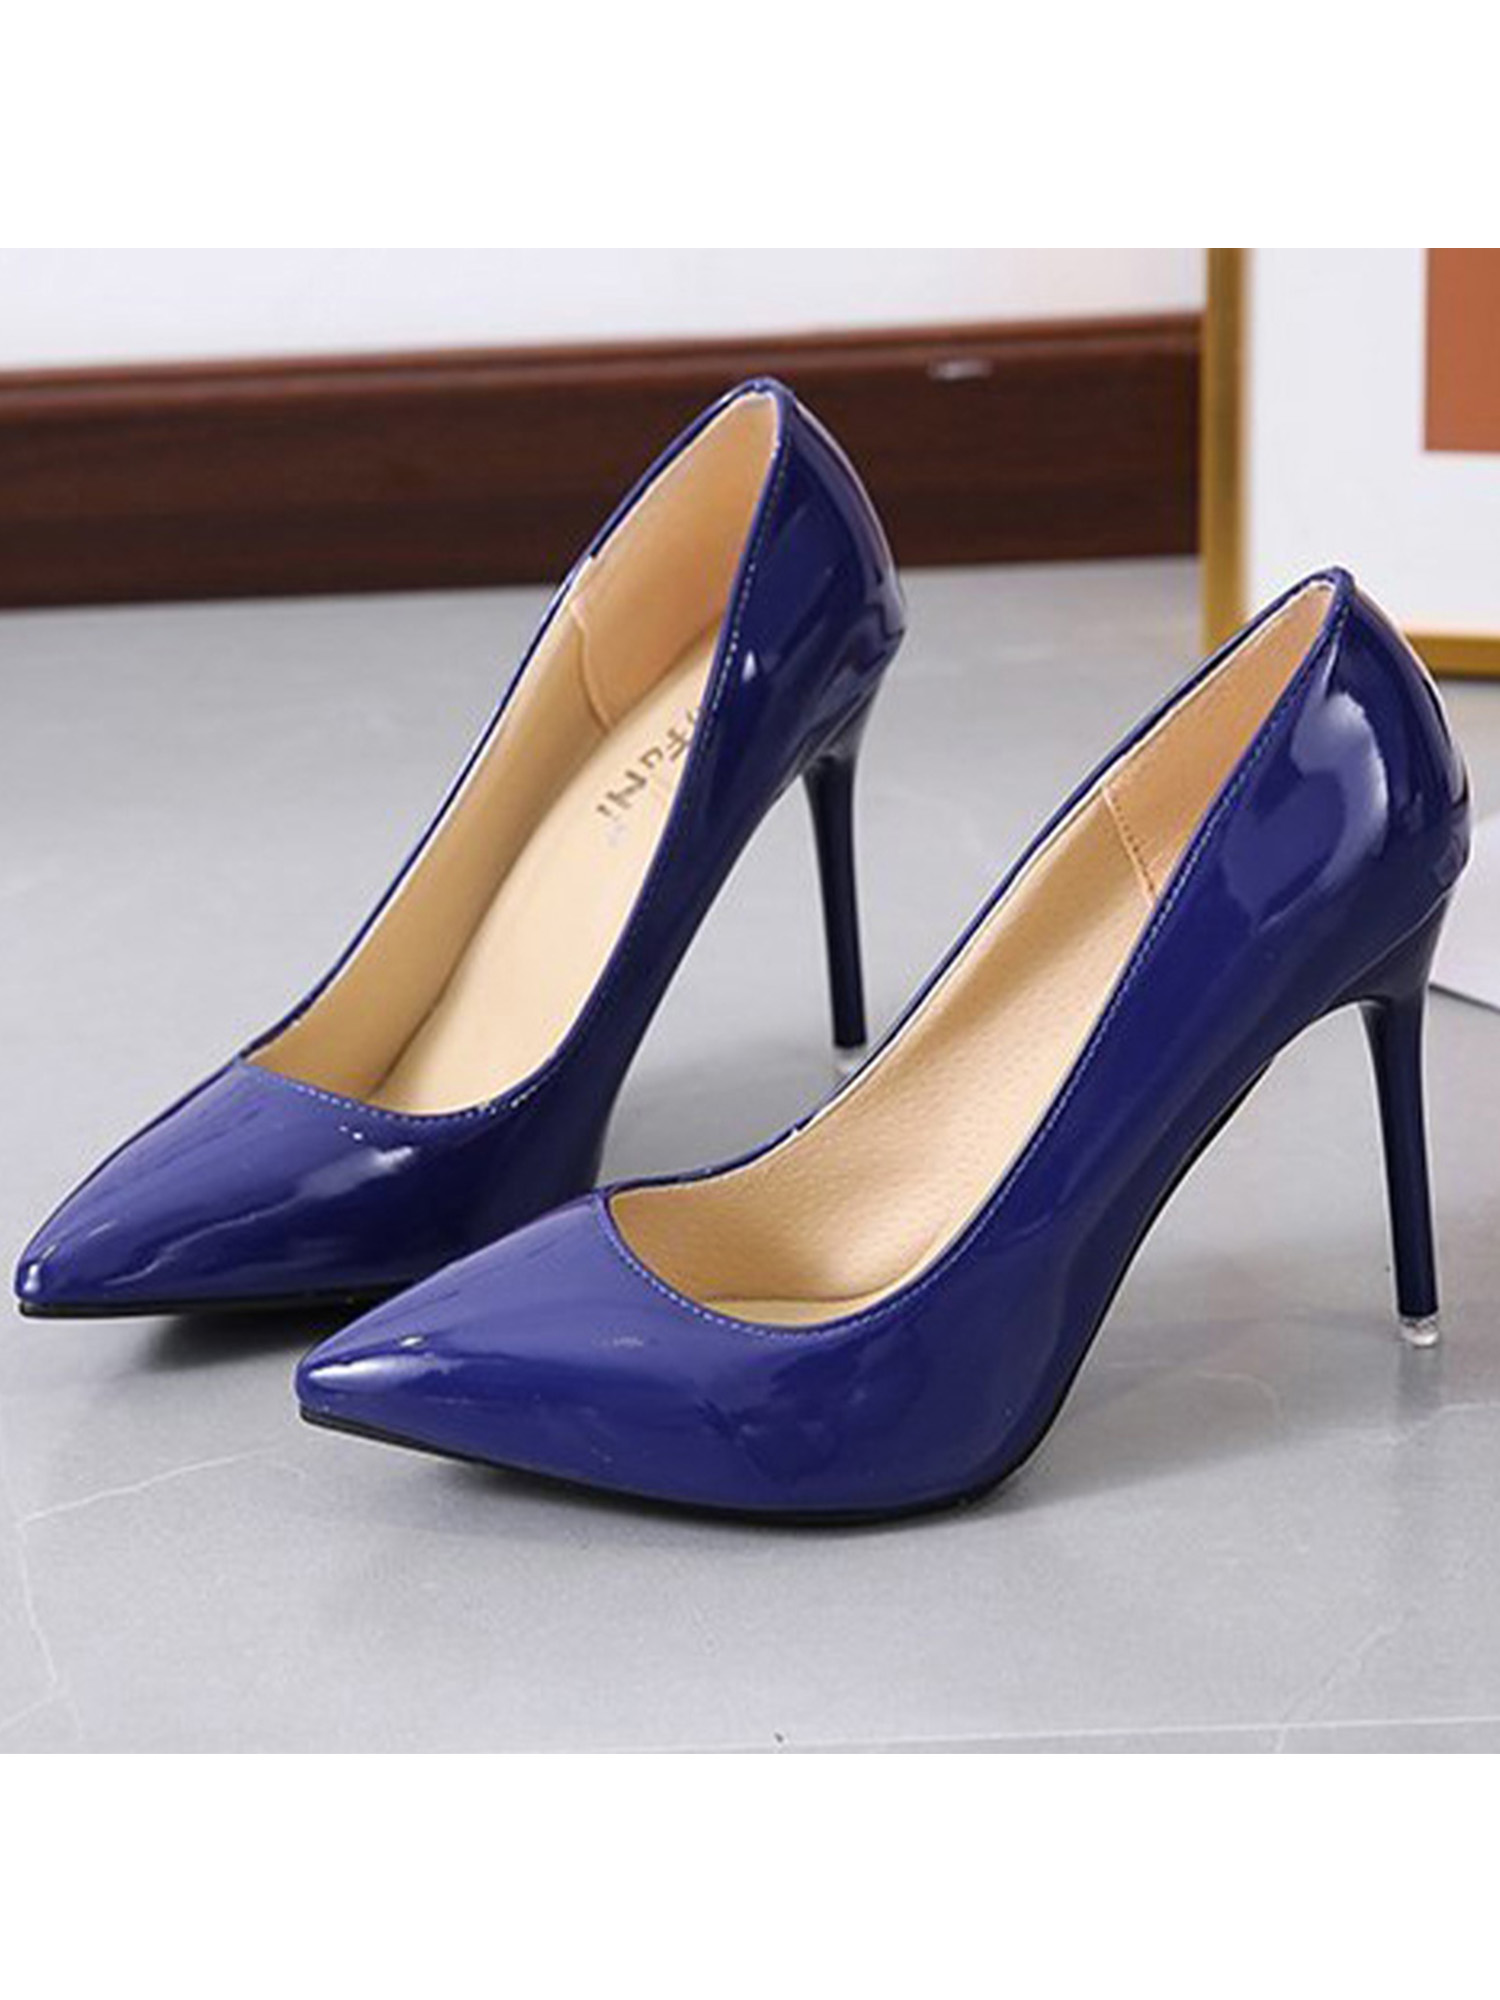 High Heels for Women Closed Toe Stillettos Heel Dress Shoes Blue 7 ...